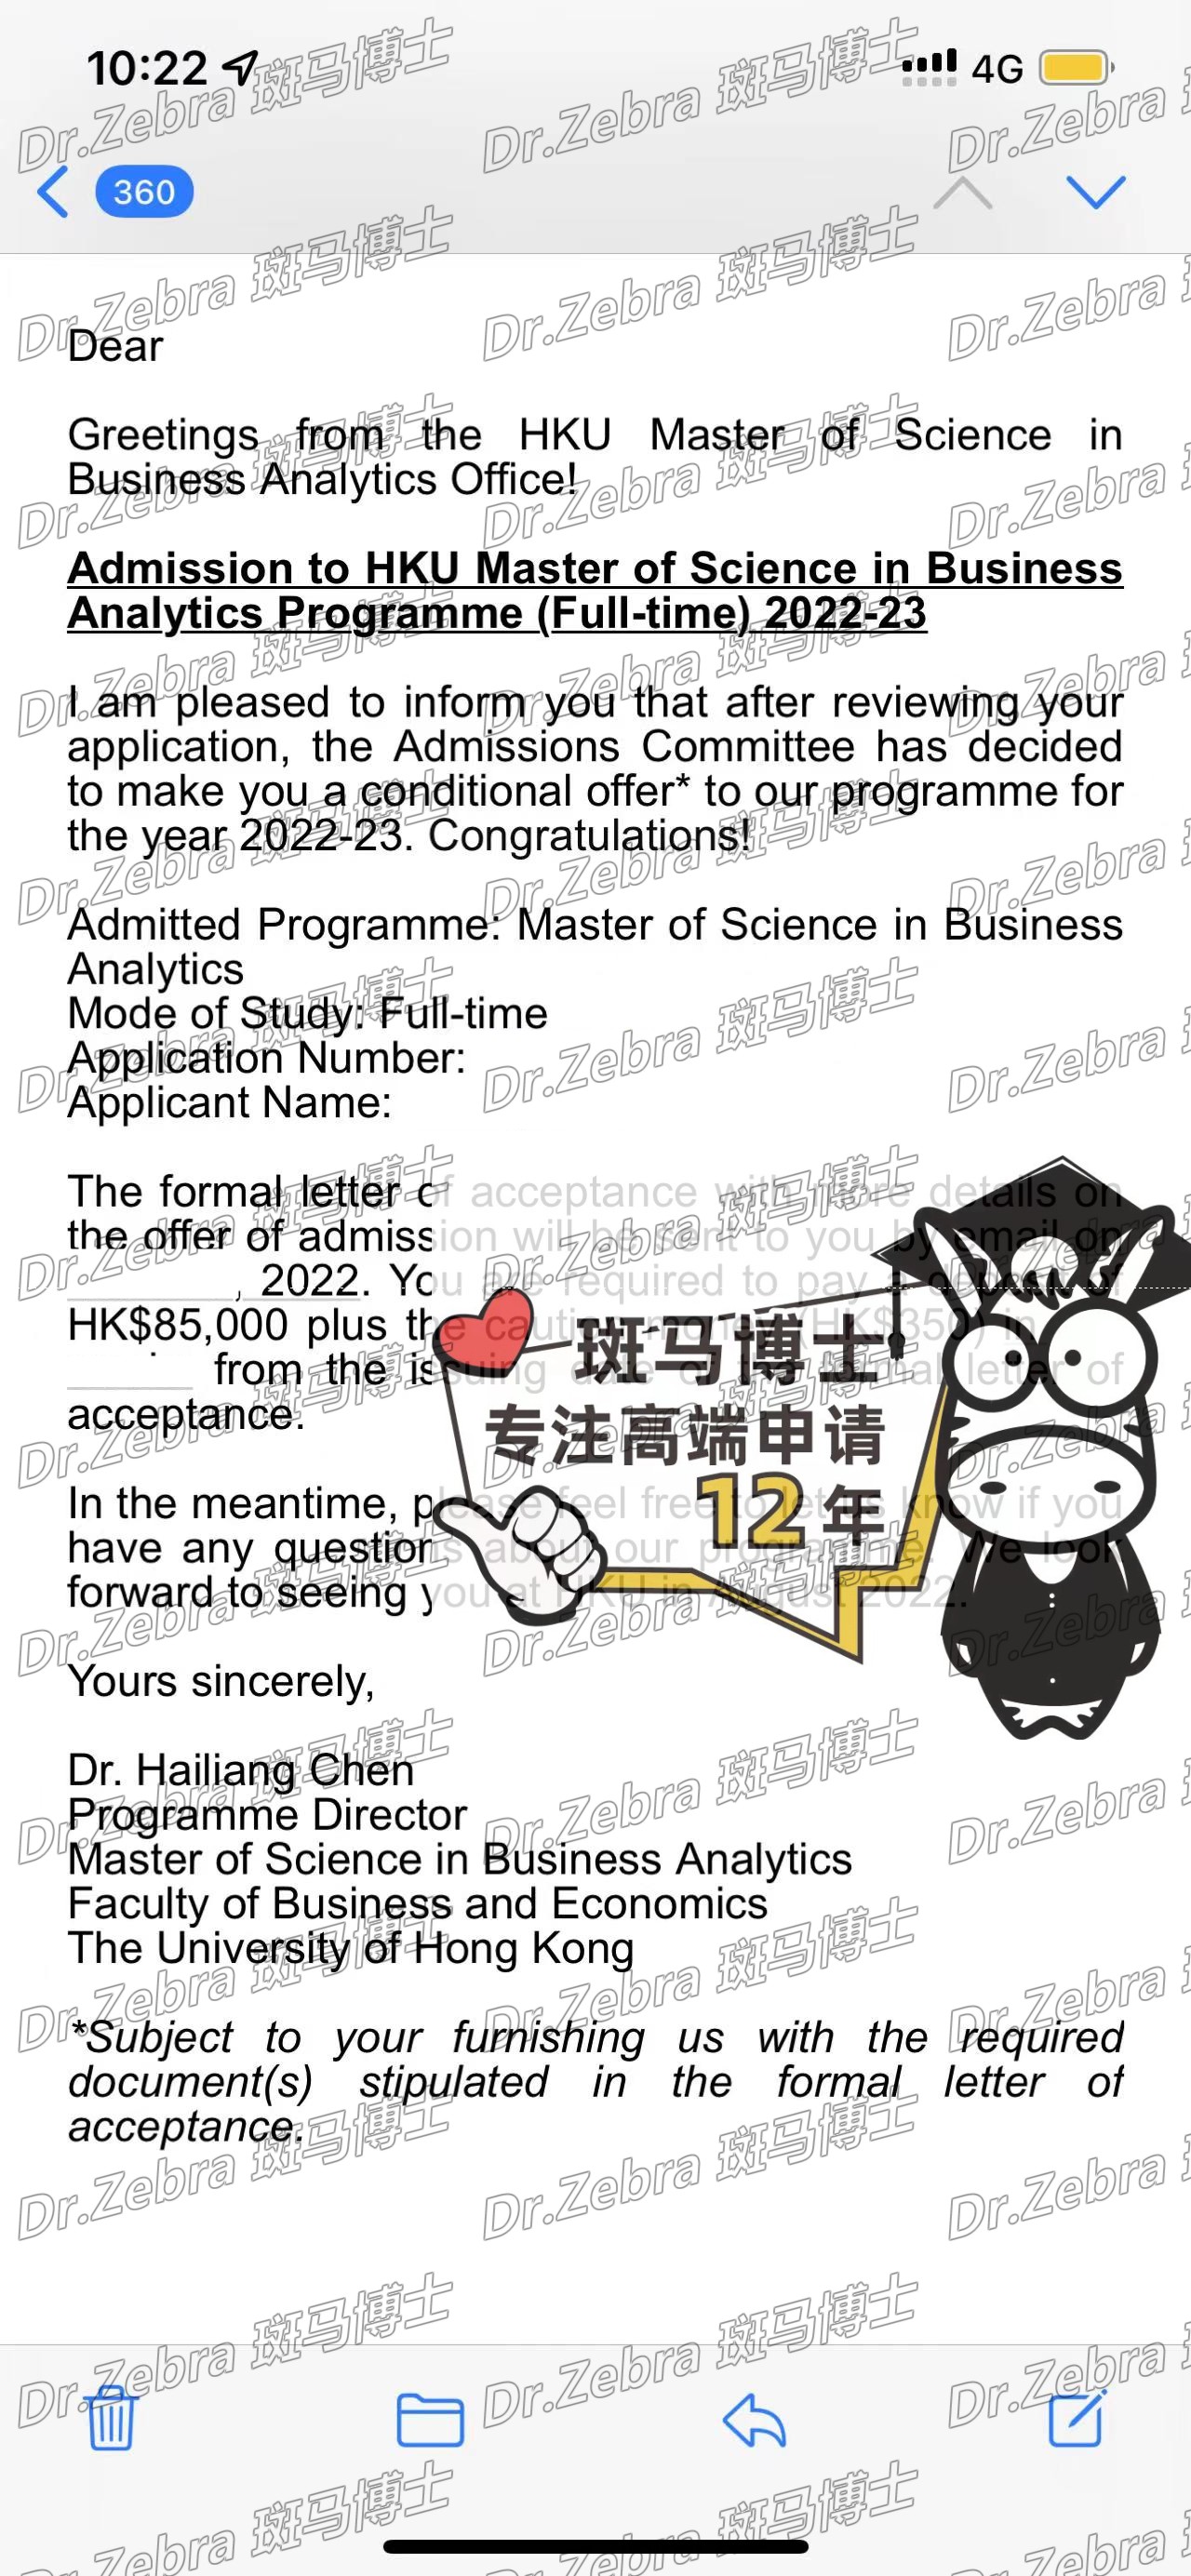 斑马博士、斑马博士留学中心、香港大学 、The University of Hong Kong 、HKU、MSc in Business Analytics 、商业分析硕士